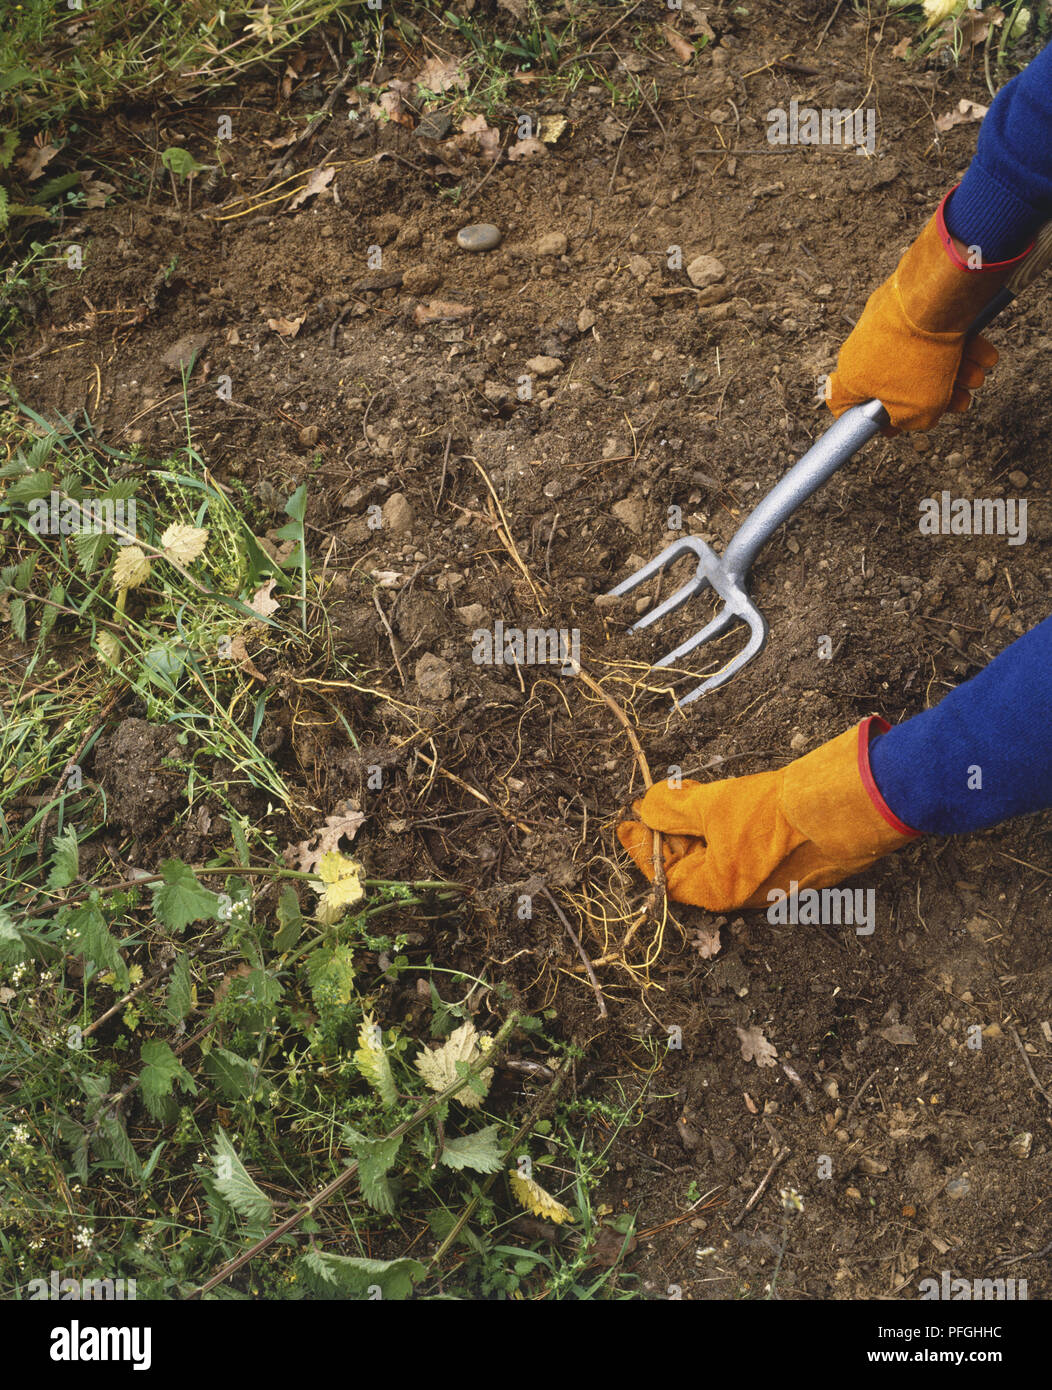 Giardiniere indossando i guanti e utilizzando una forcella per rimuovere le erbacce dal suolo, ad alto angolo di visione Foto Stock